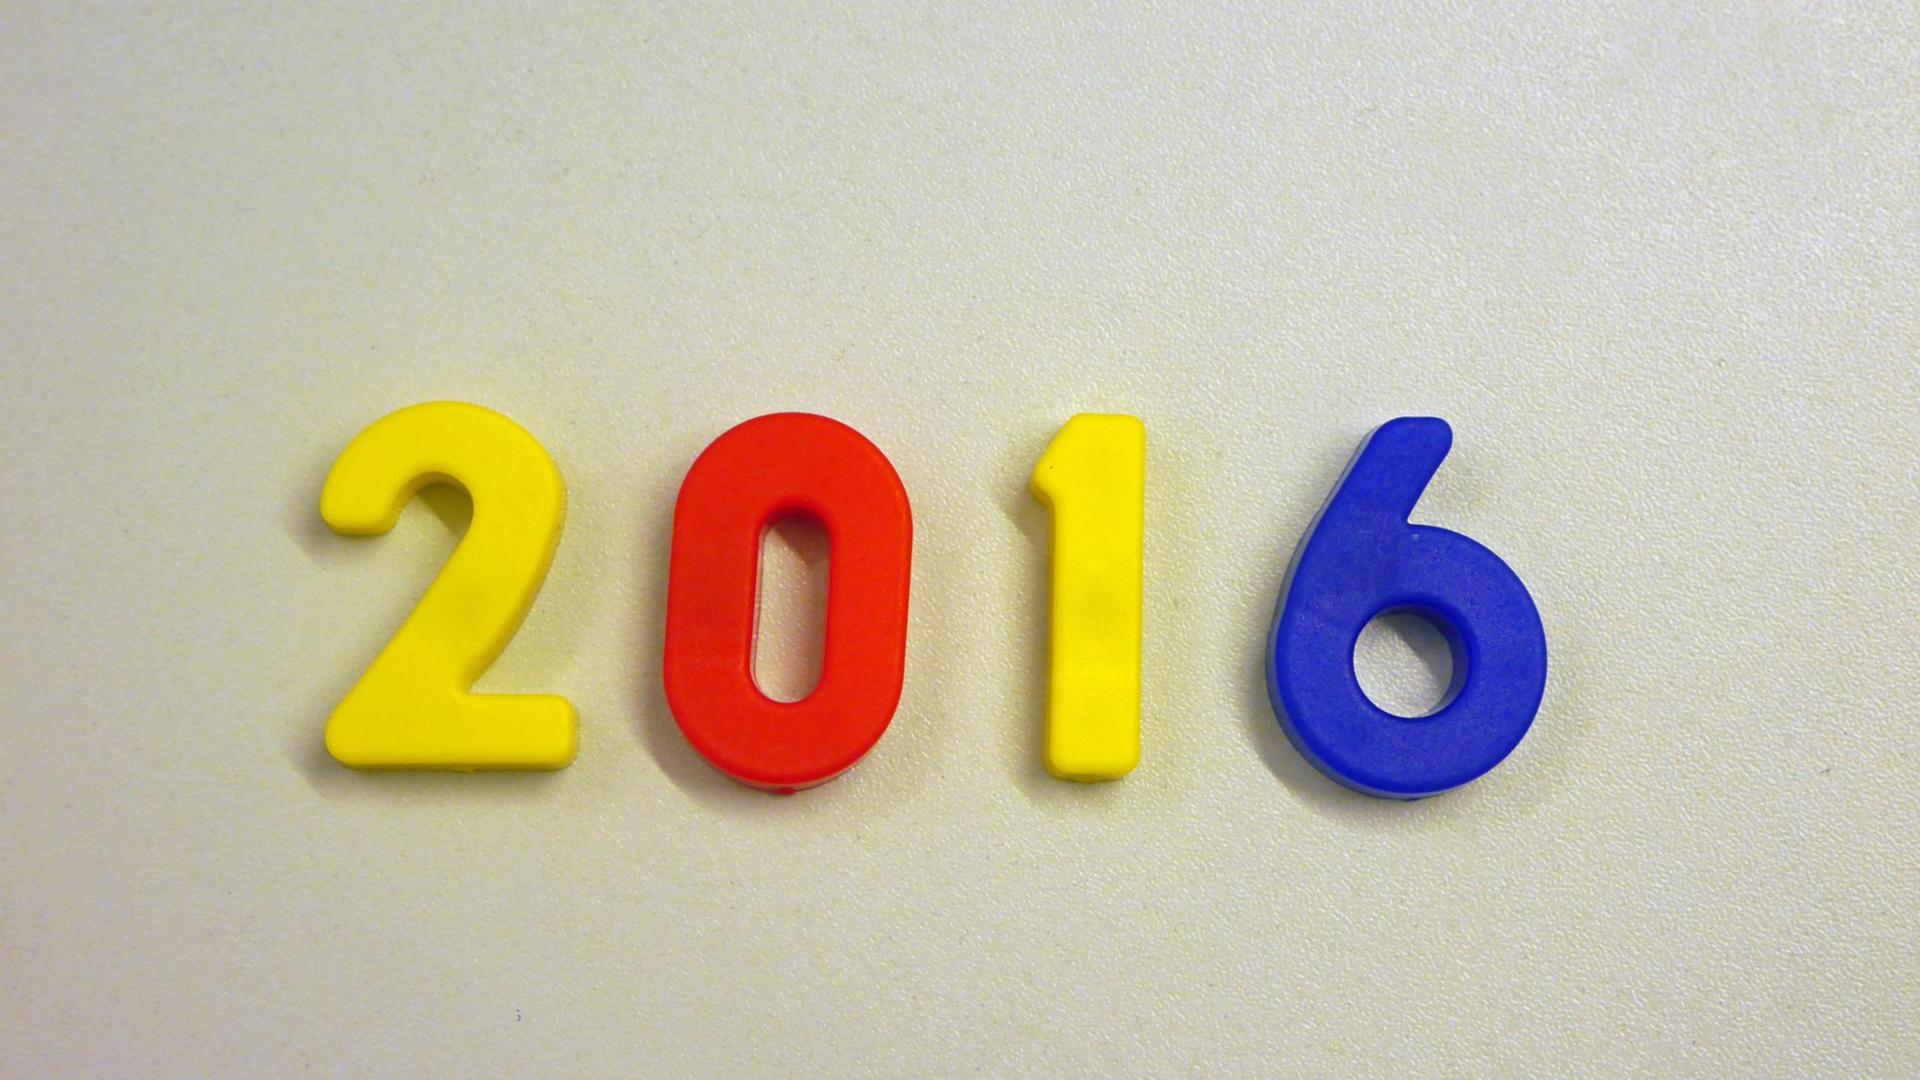 Die Jahreszahl 2016 liegt in bunten Magnetbuchstaben auf einem Tisch.